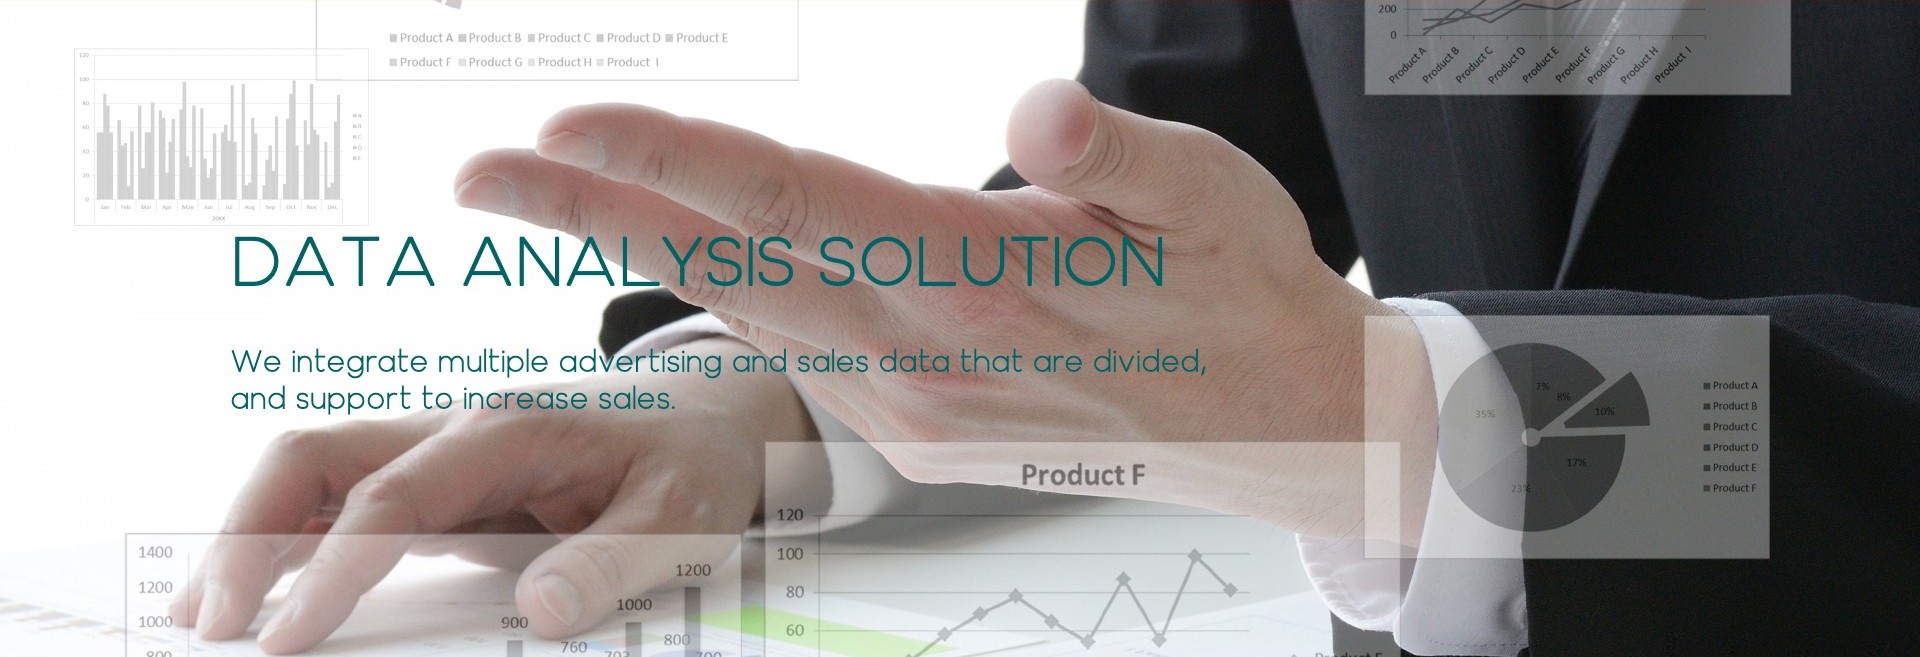 株式会社5のデータ分析ソリューション